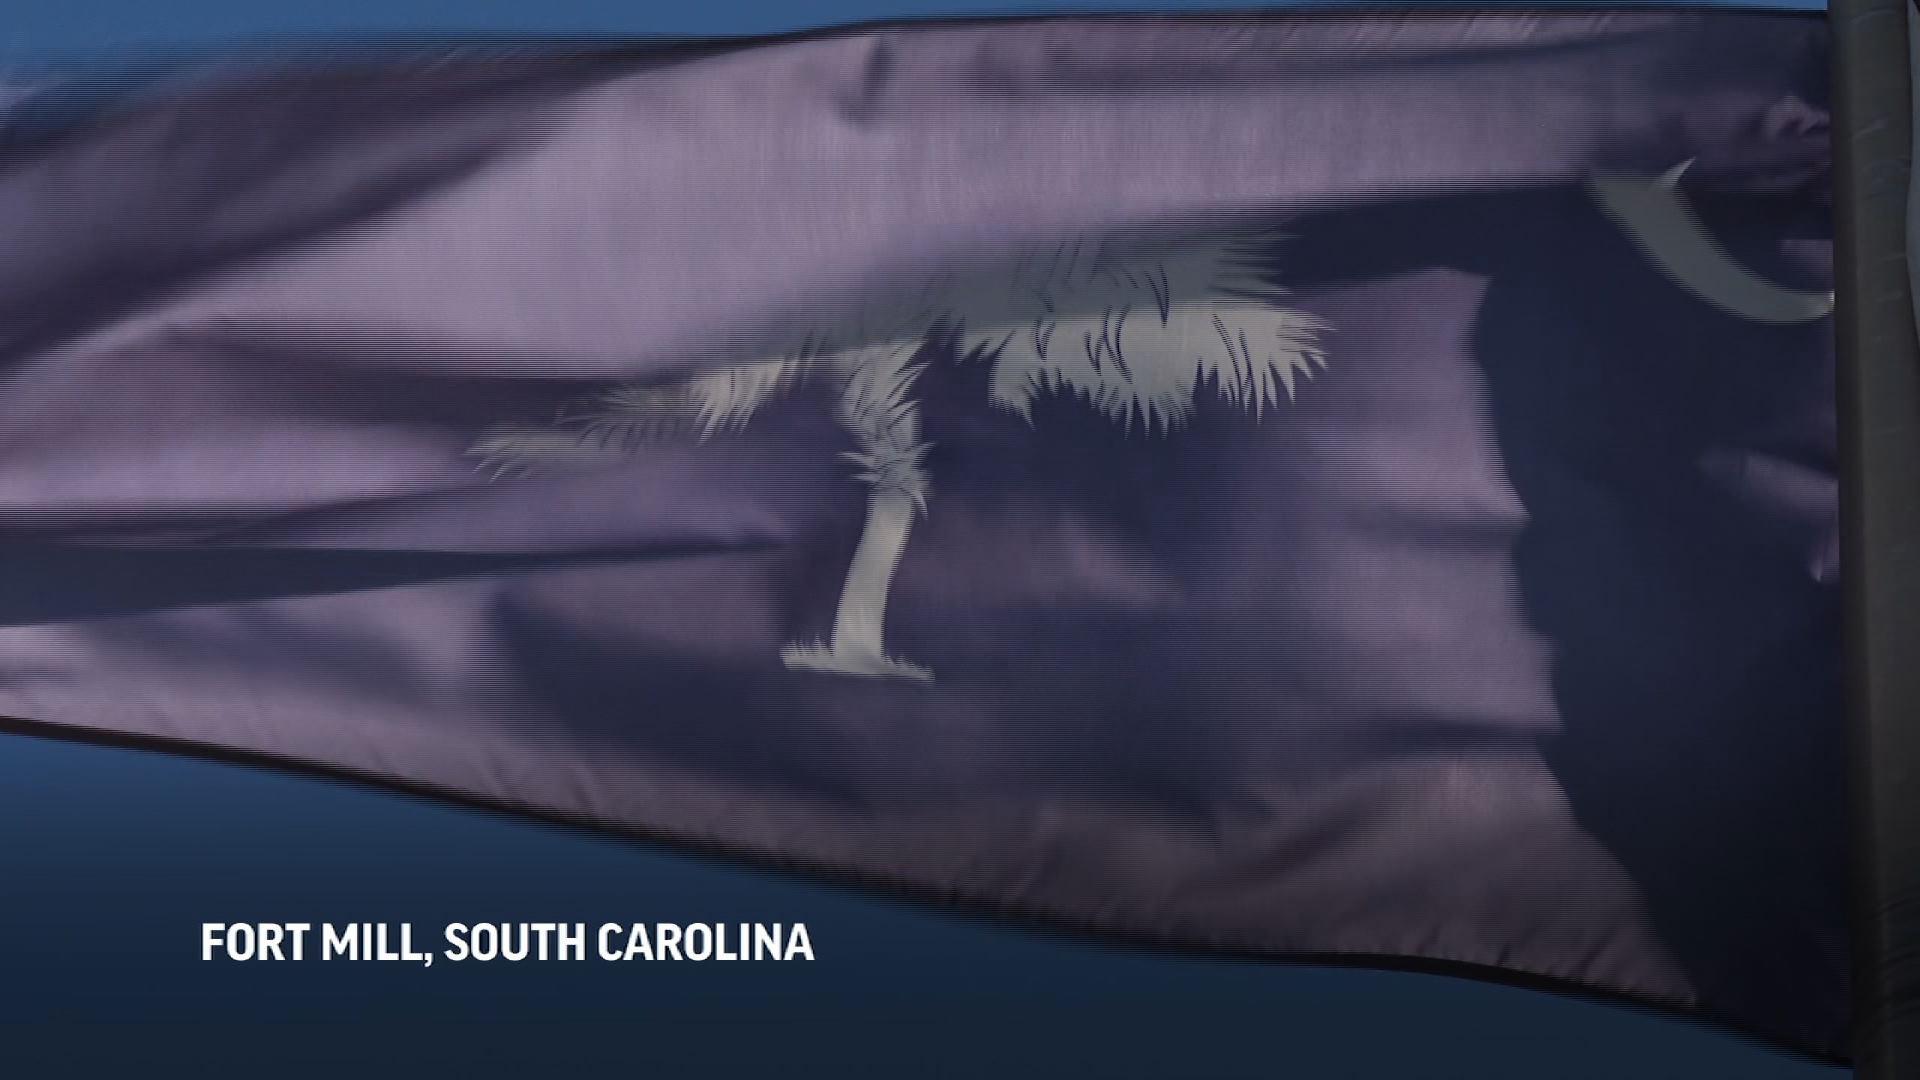 Casa de S. Carolina will vote on bill that prohibits abortion